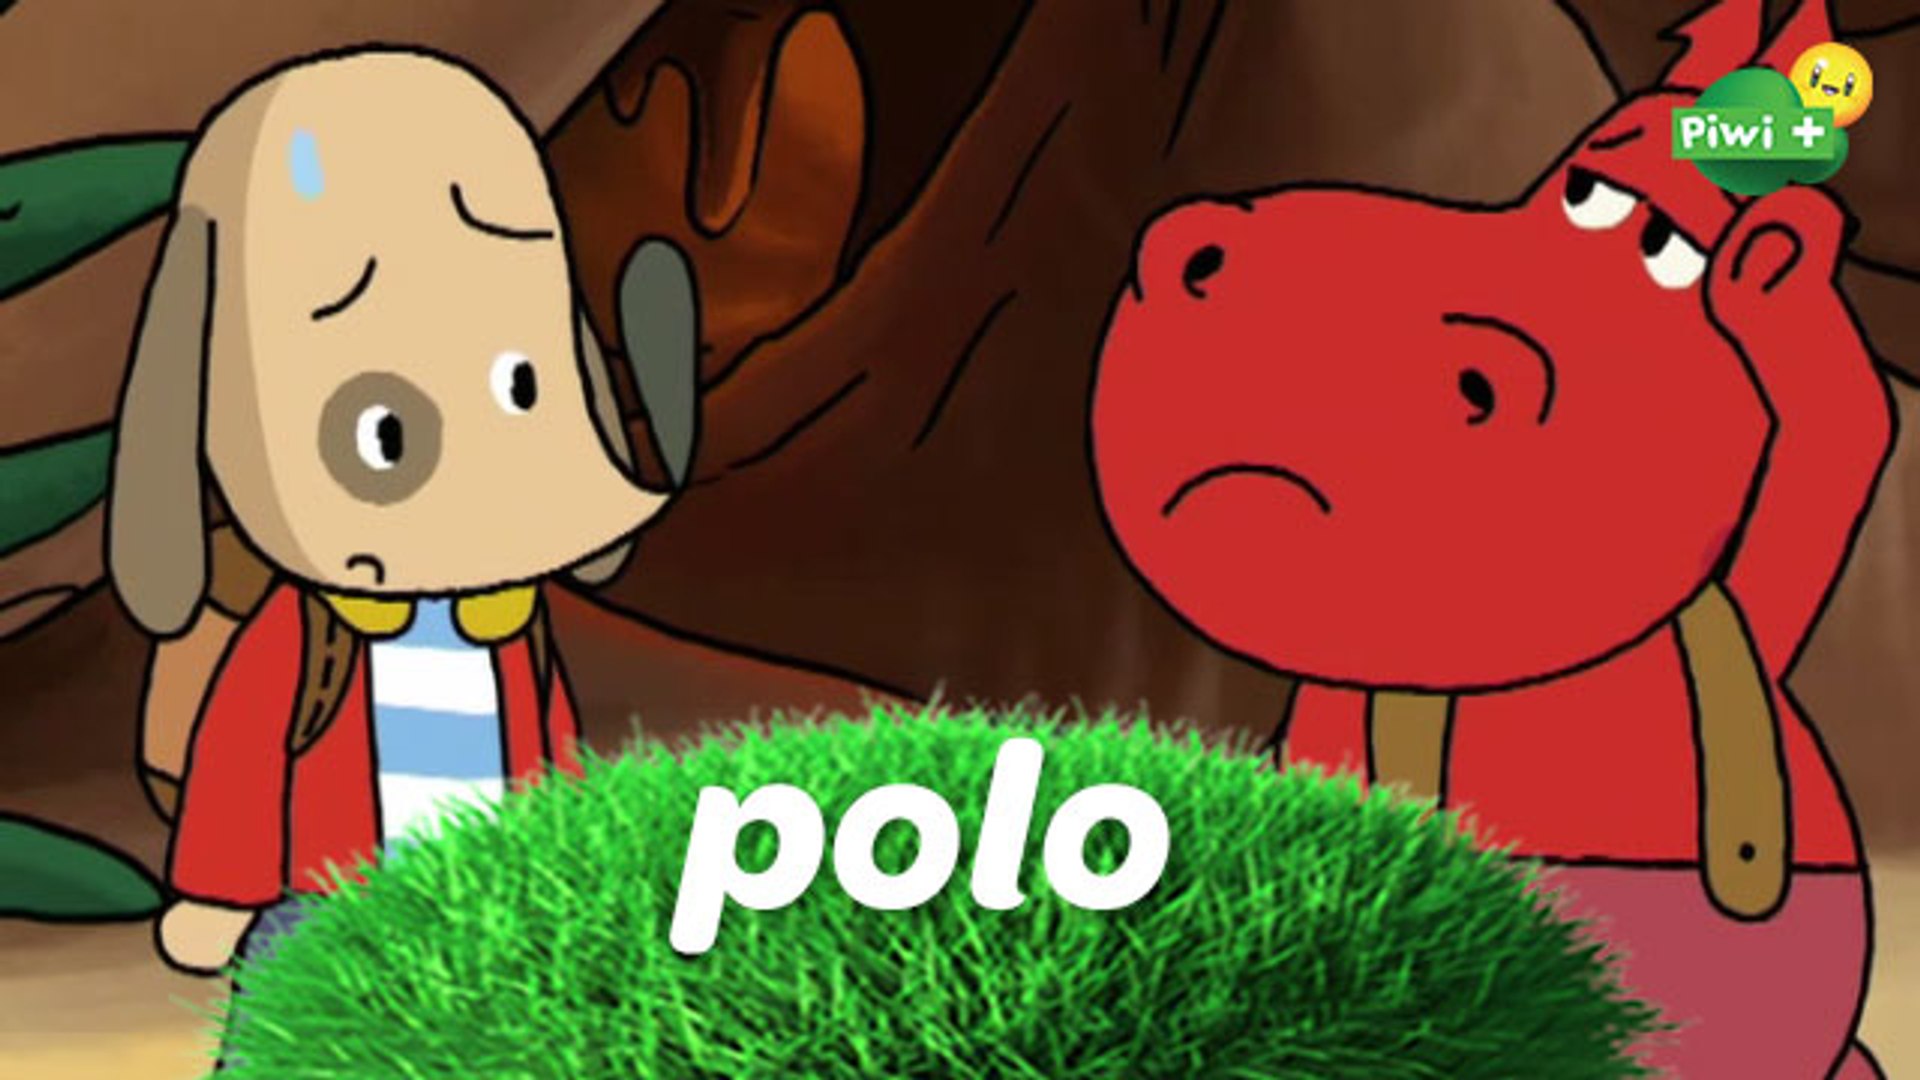 POLO - Episode entier "l'île de Diego s'agrandie" (dessin animé piwi+) -  Vidéo Dailymotion